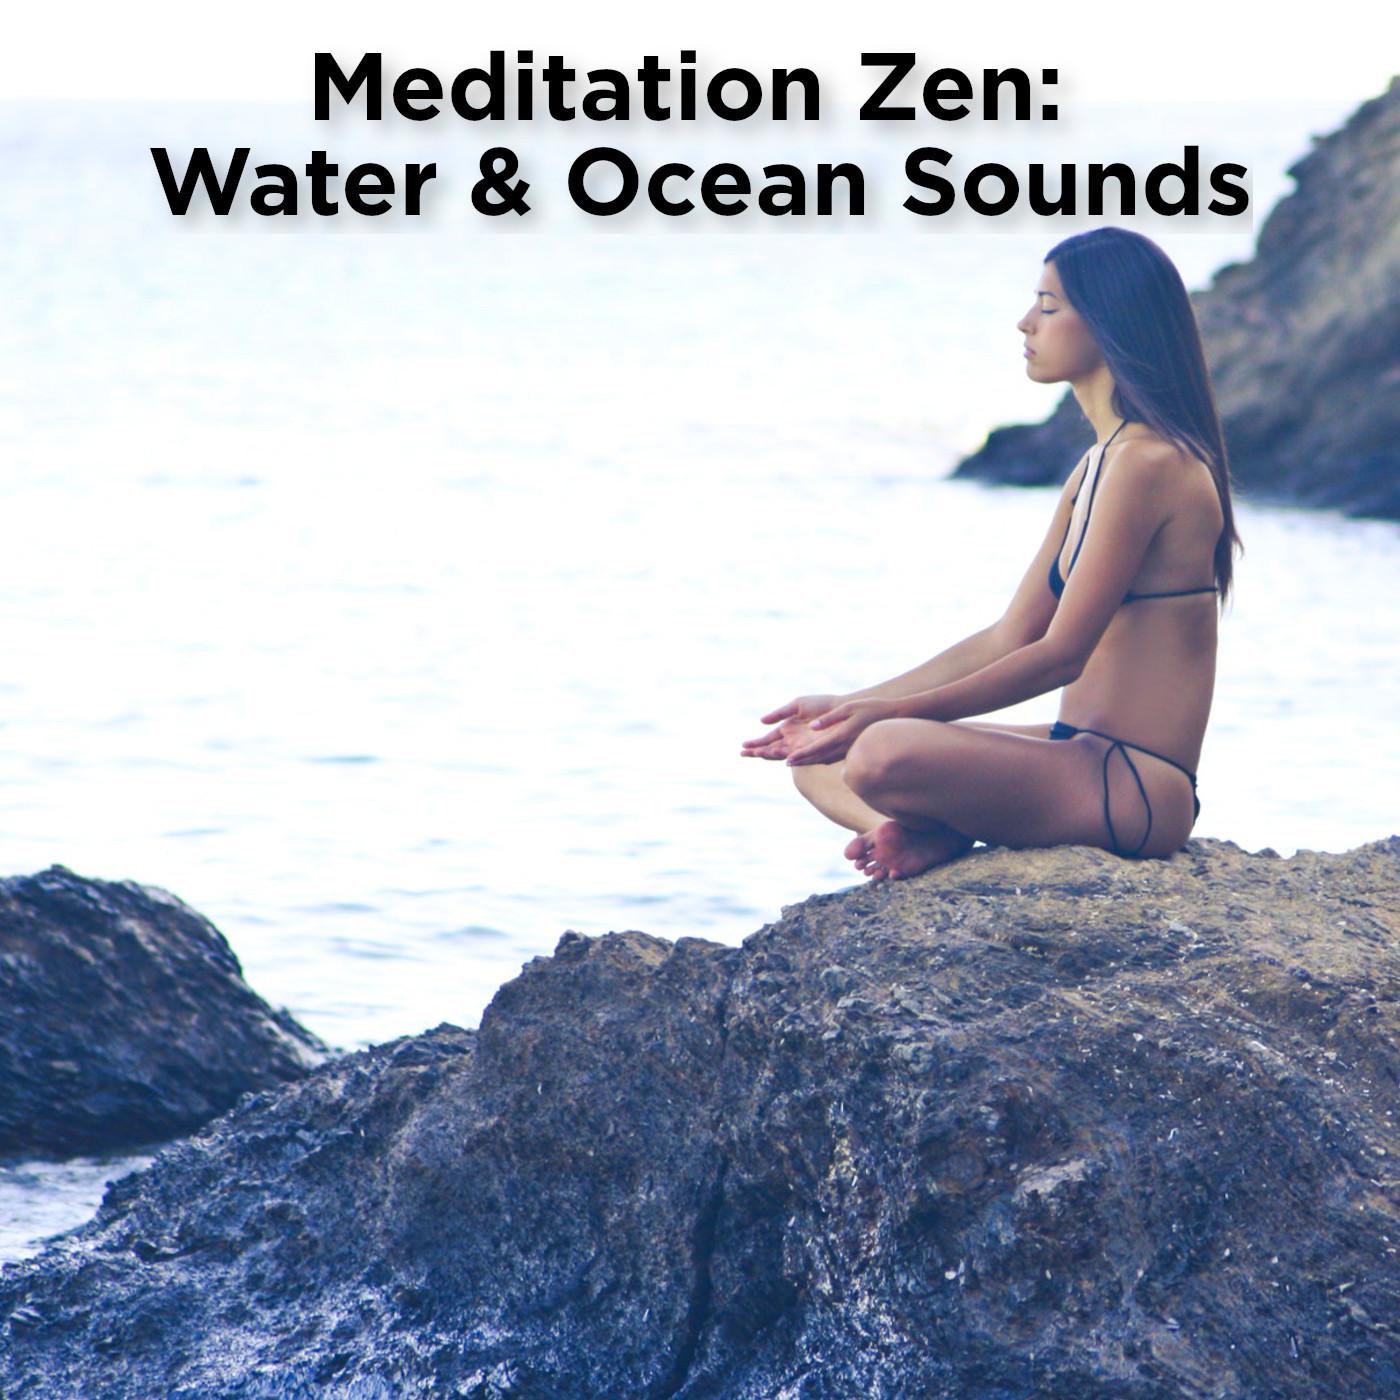 Meditation Zen: Water & Ocean Sounds